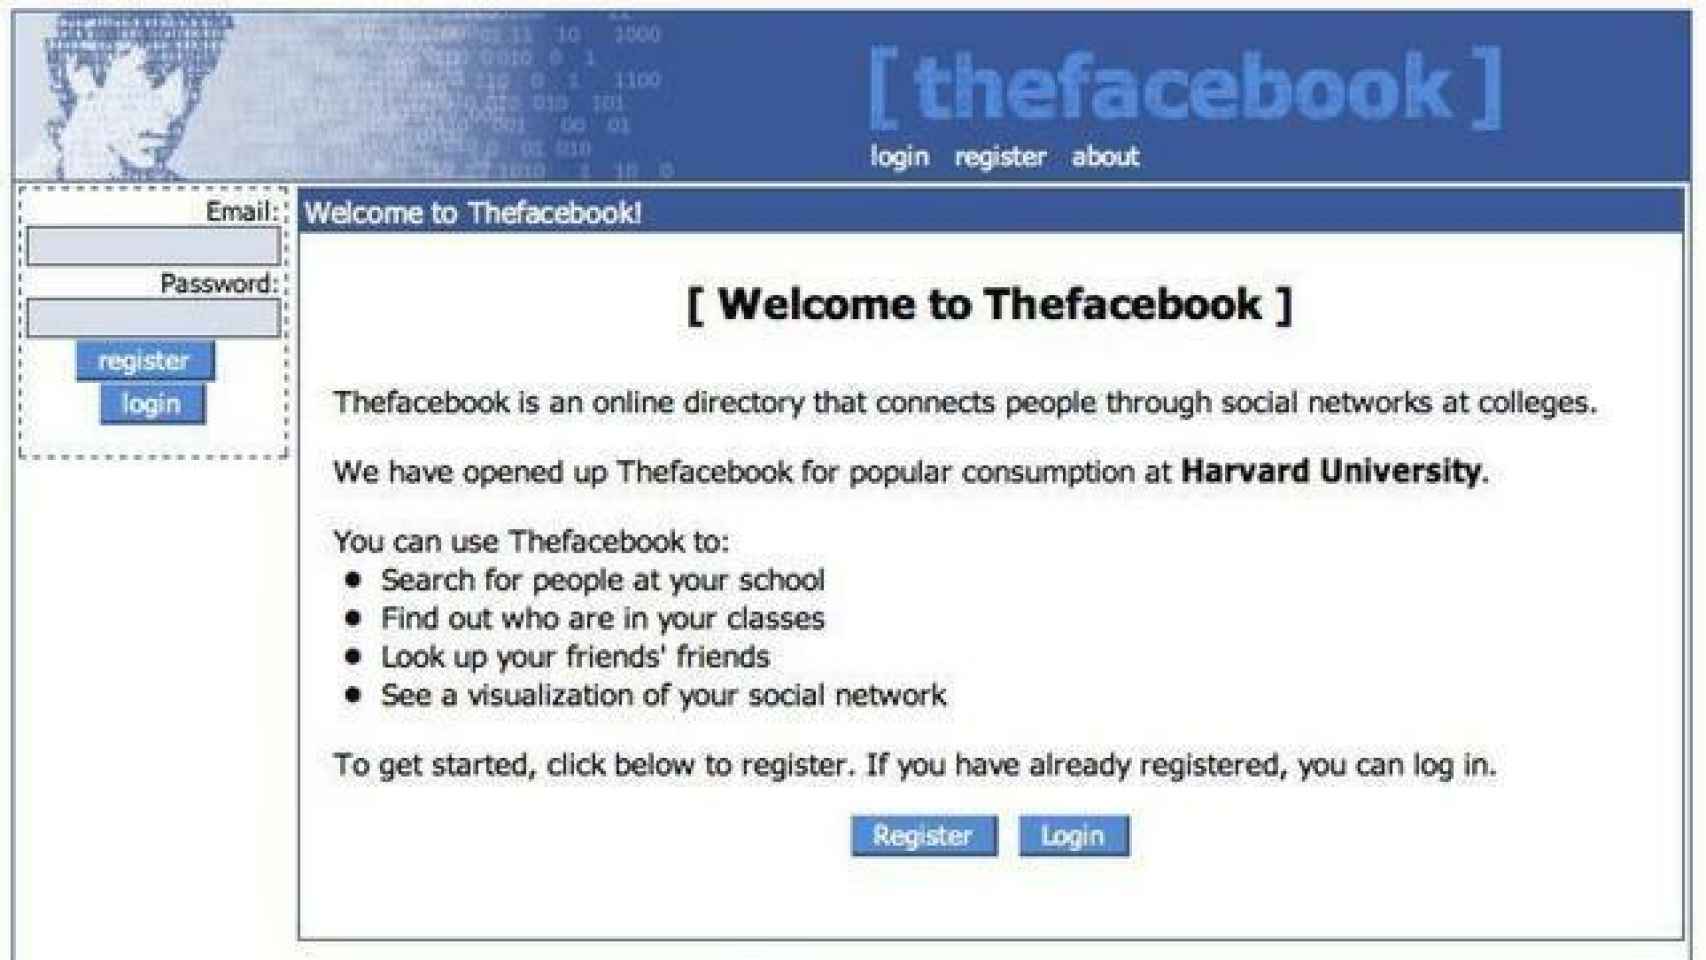 Apariencia de The Facebook en 2004